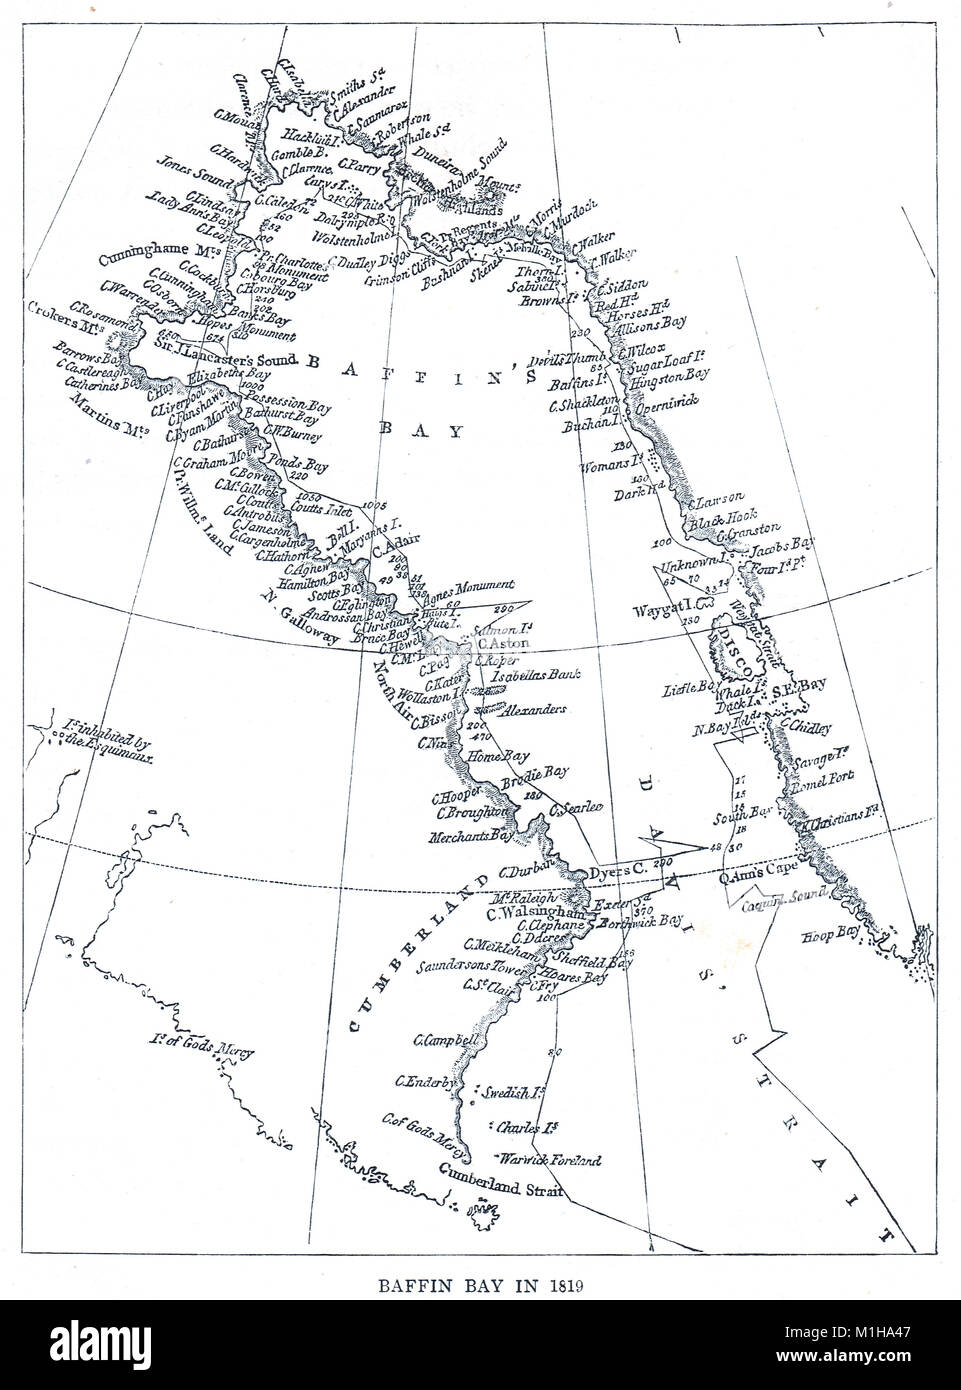 Plan de la baie de Baffin en 1819 Banque D'Images